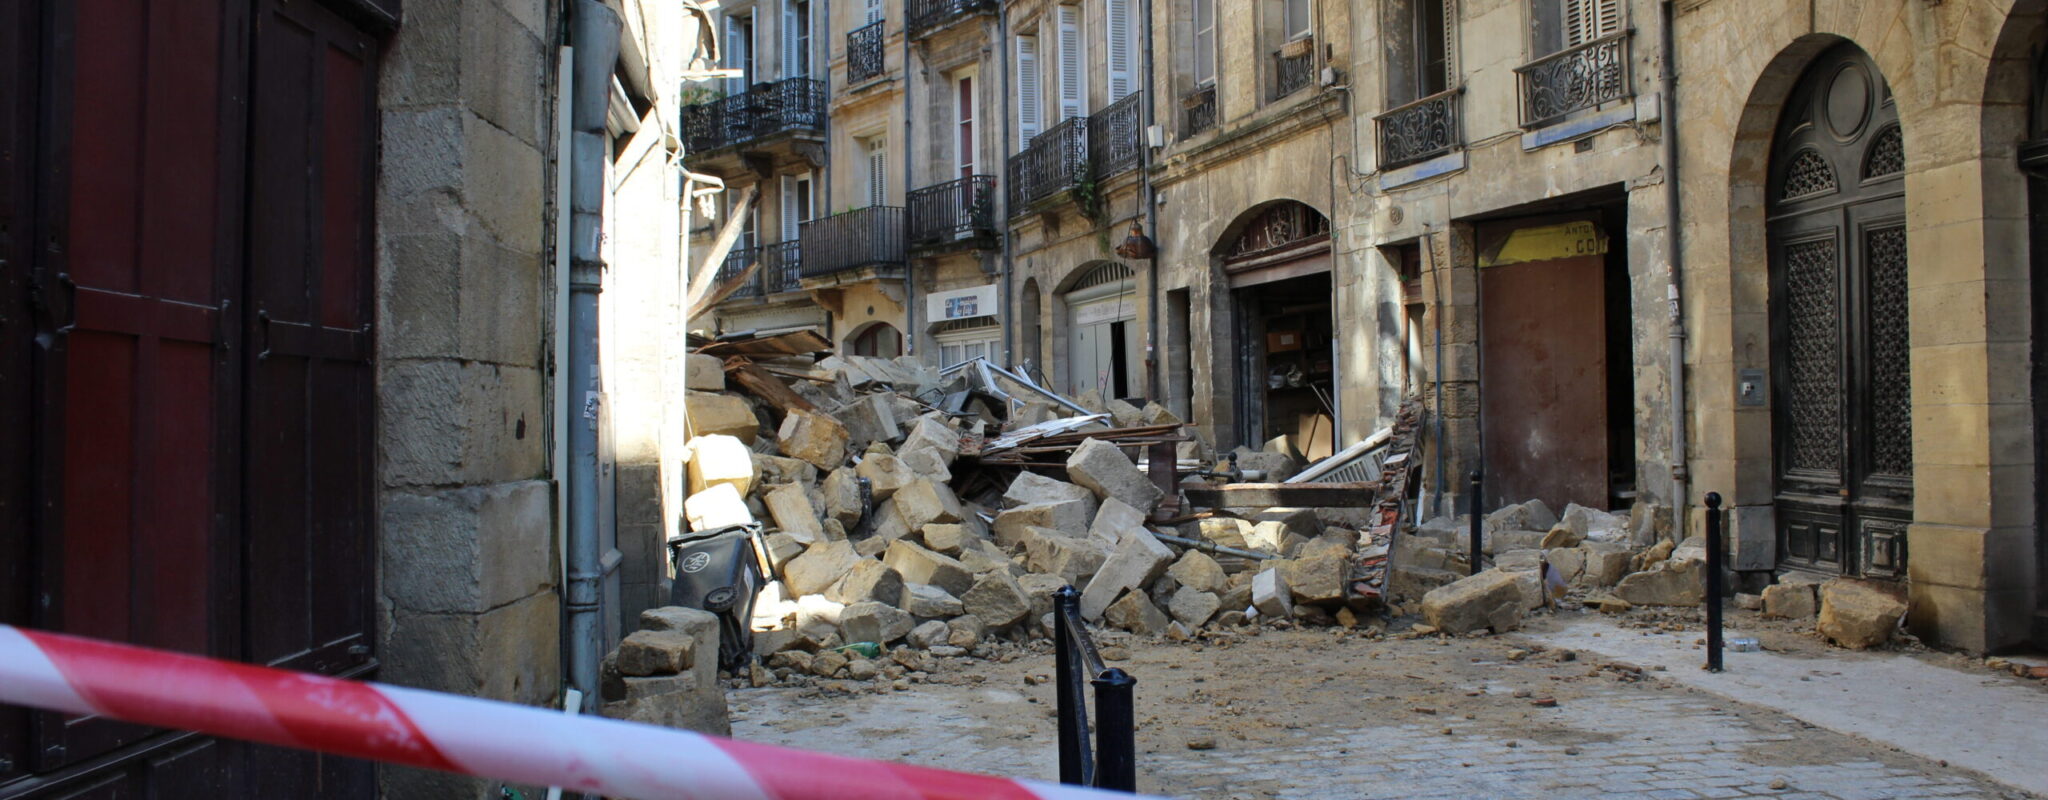 Effondrement d’immeubles à Bordeaux : « 900 arrêtés de péril non suivis depuis 10 ans »